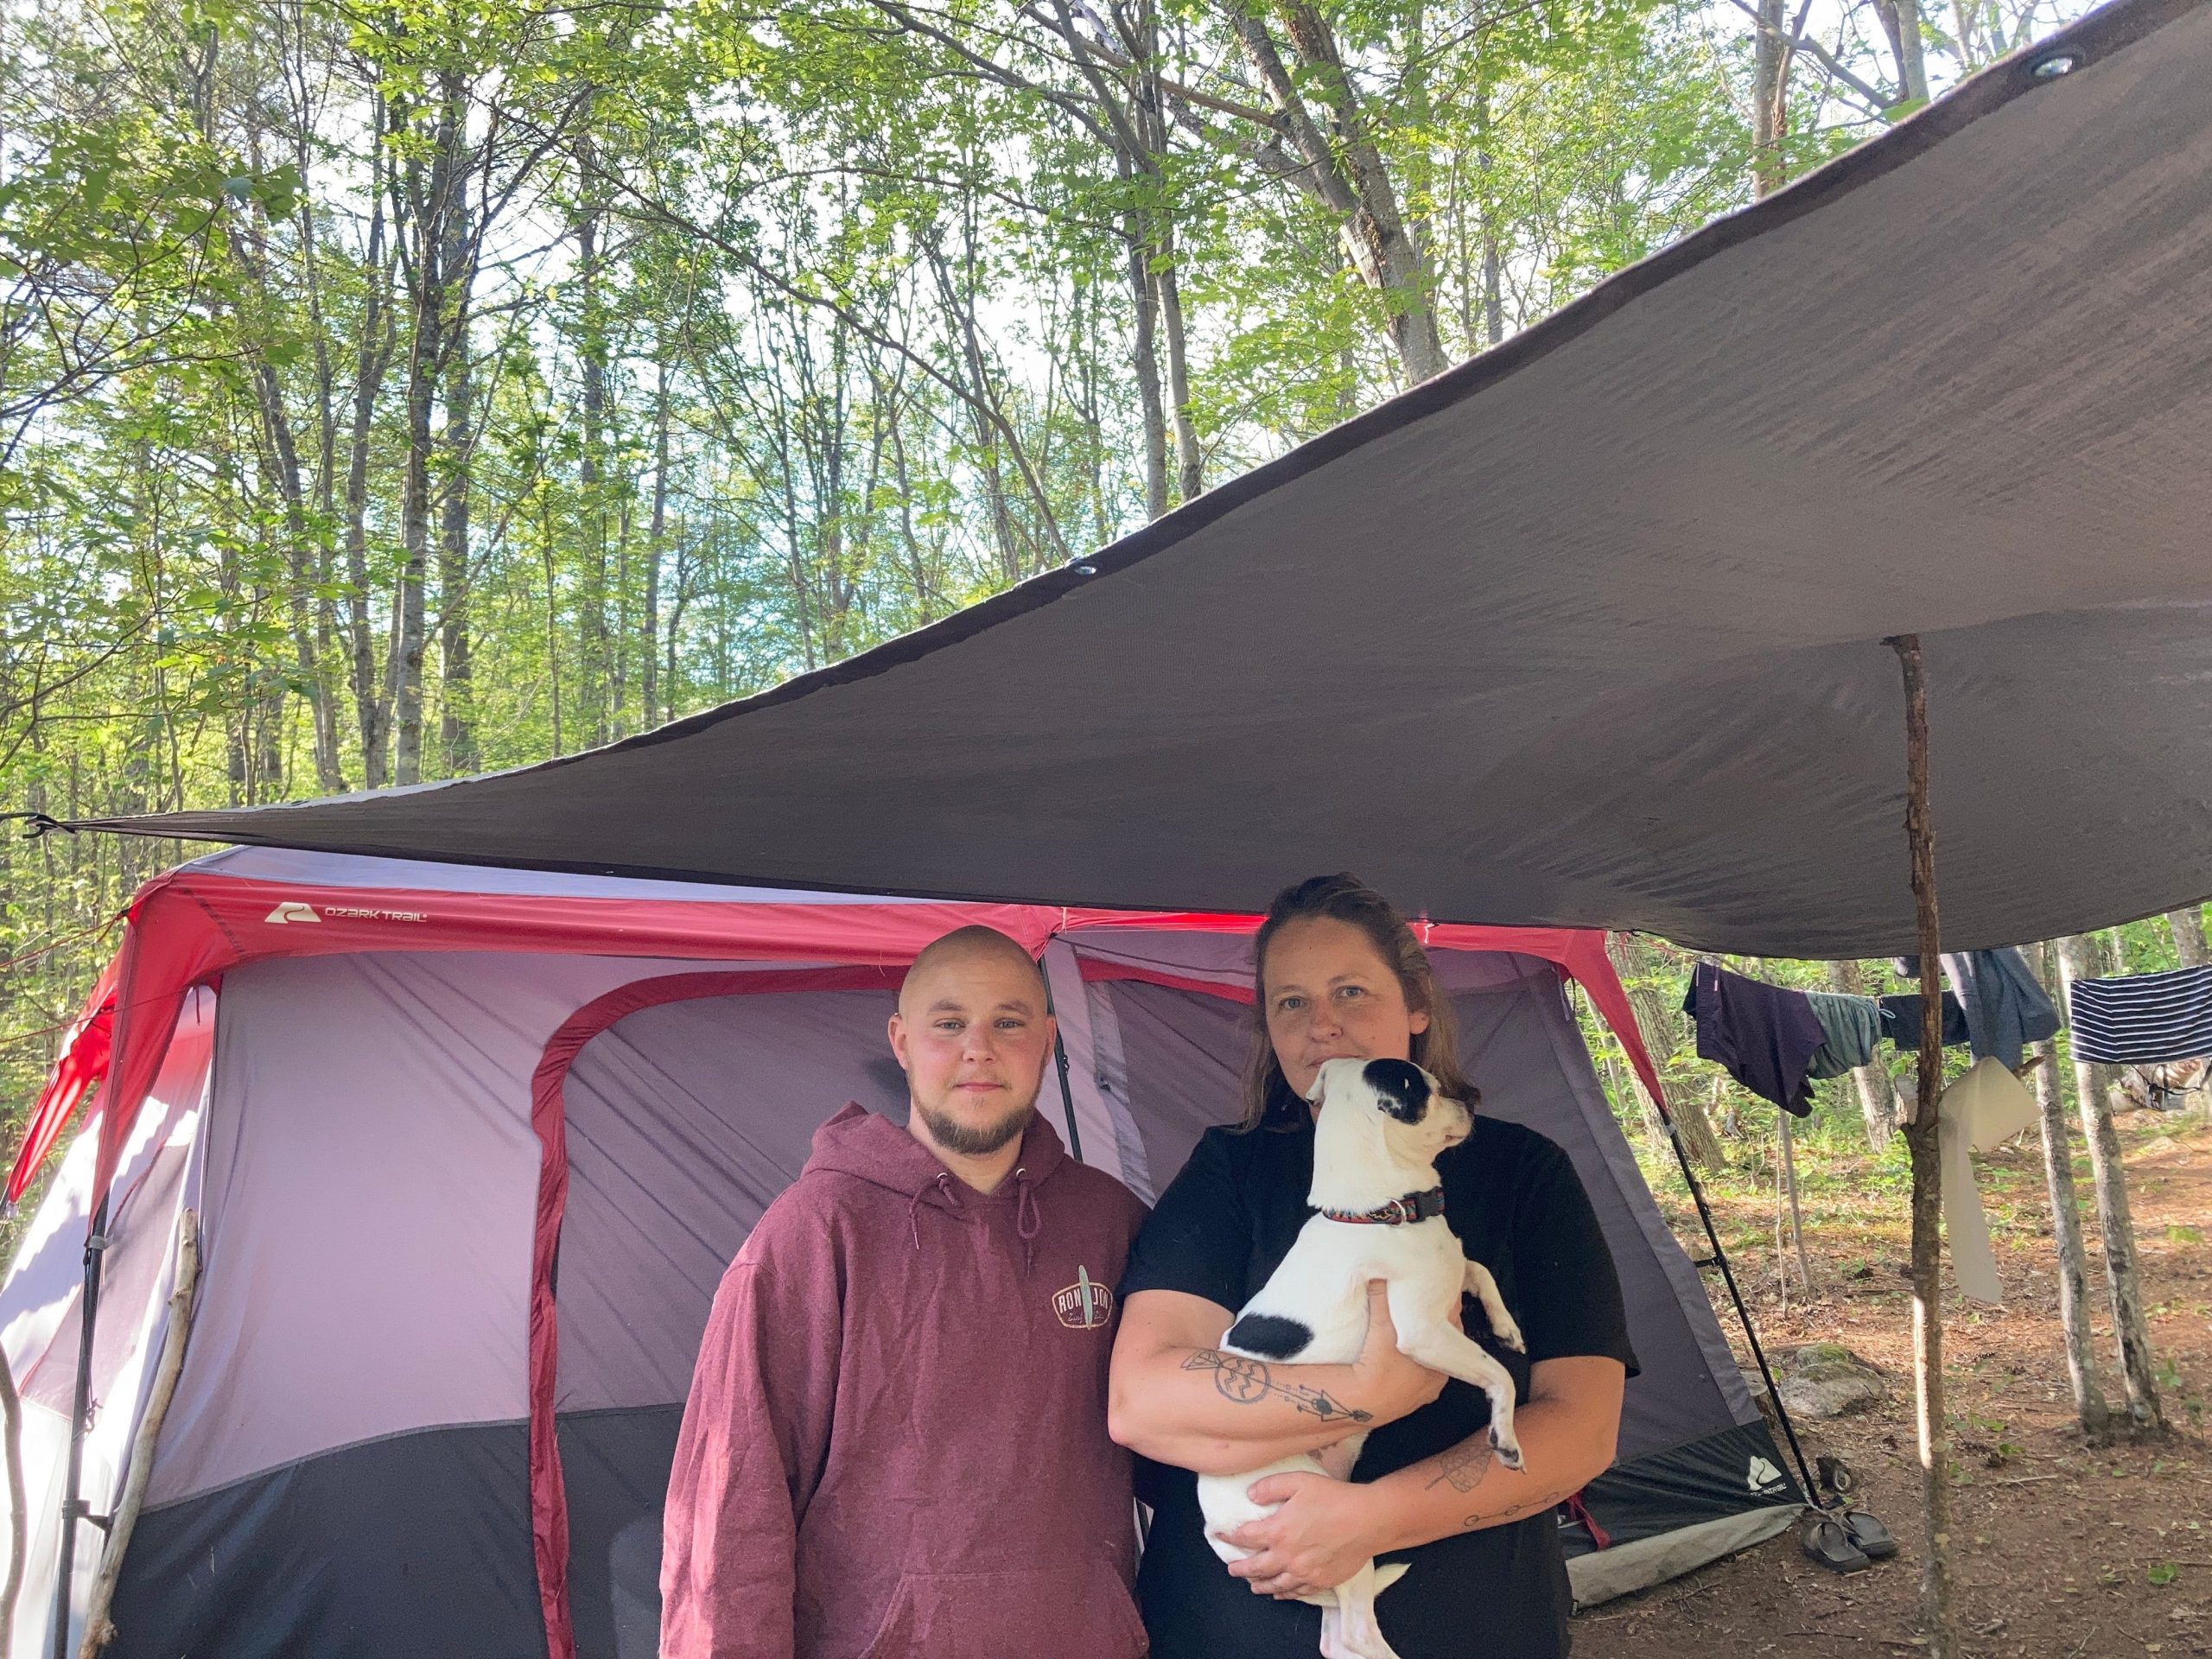 Tienerjaren ik ben gelukkig Betrouwbaar We've been living in a tent for 5 months because we couldn't afford our  $1,200 rent. Now we're preparing for winter in Maine.